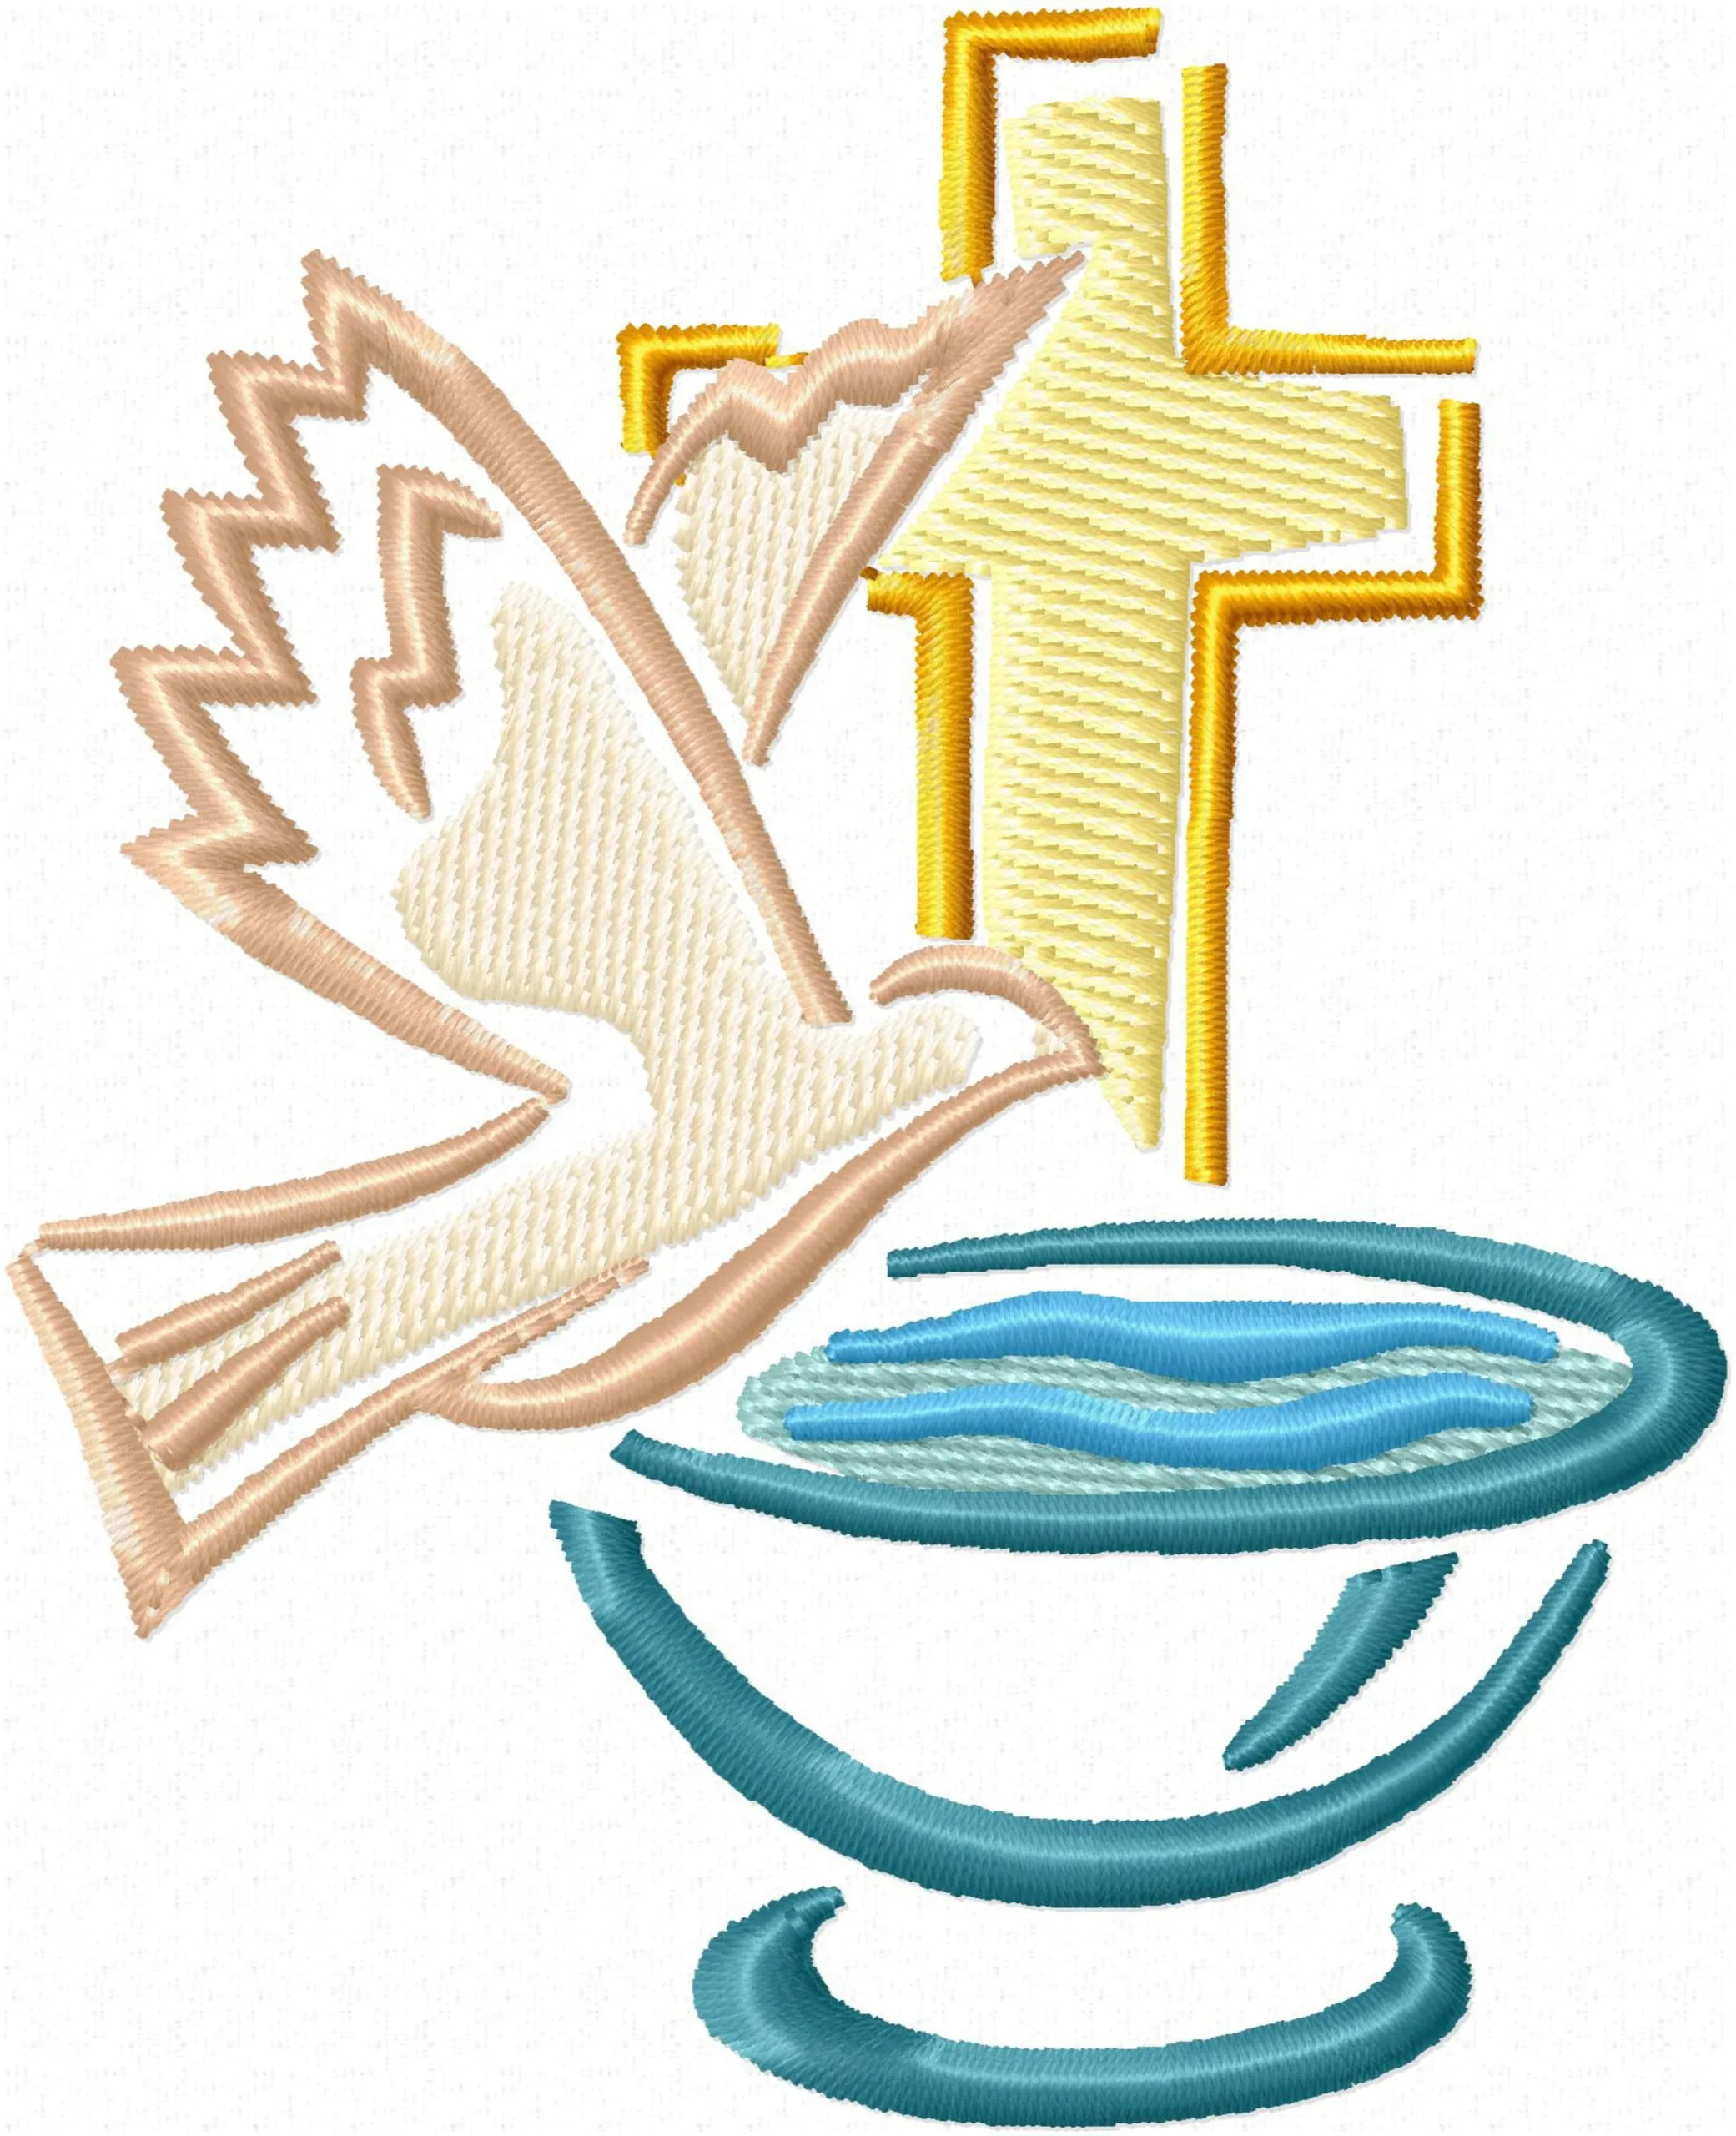 baptism symbolizes